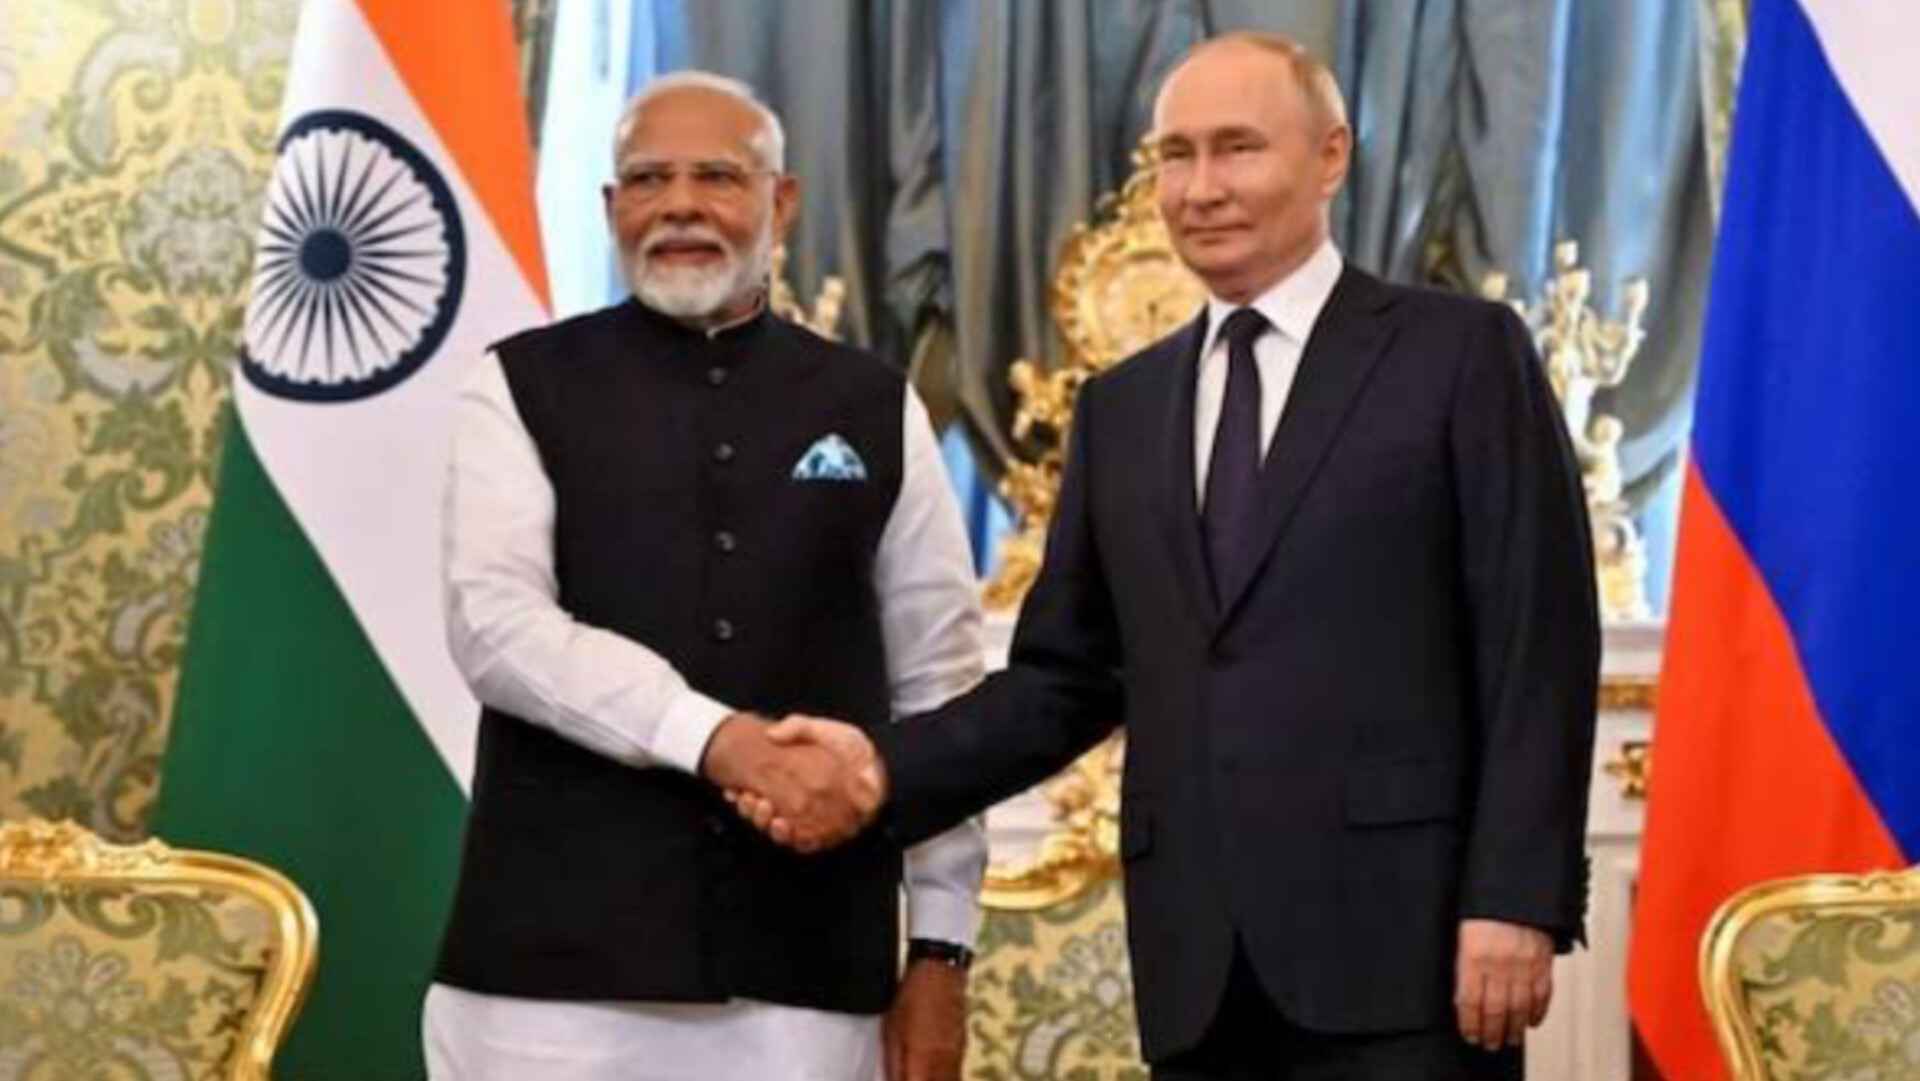 भारत रूस संग अपनी दोस्ती का उपयोग कर यूक्रेन के खिलाफ 'अवैध युद्ध' समाप्त कराए: अमेरिका